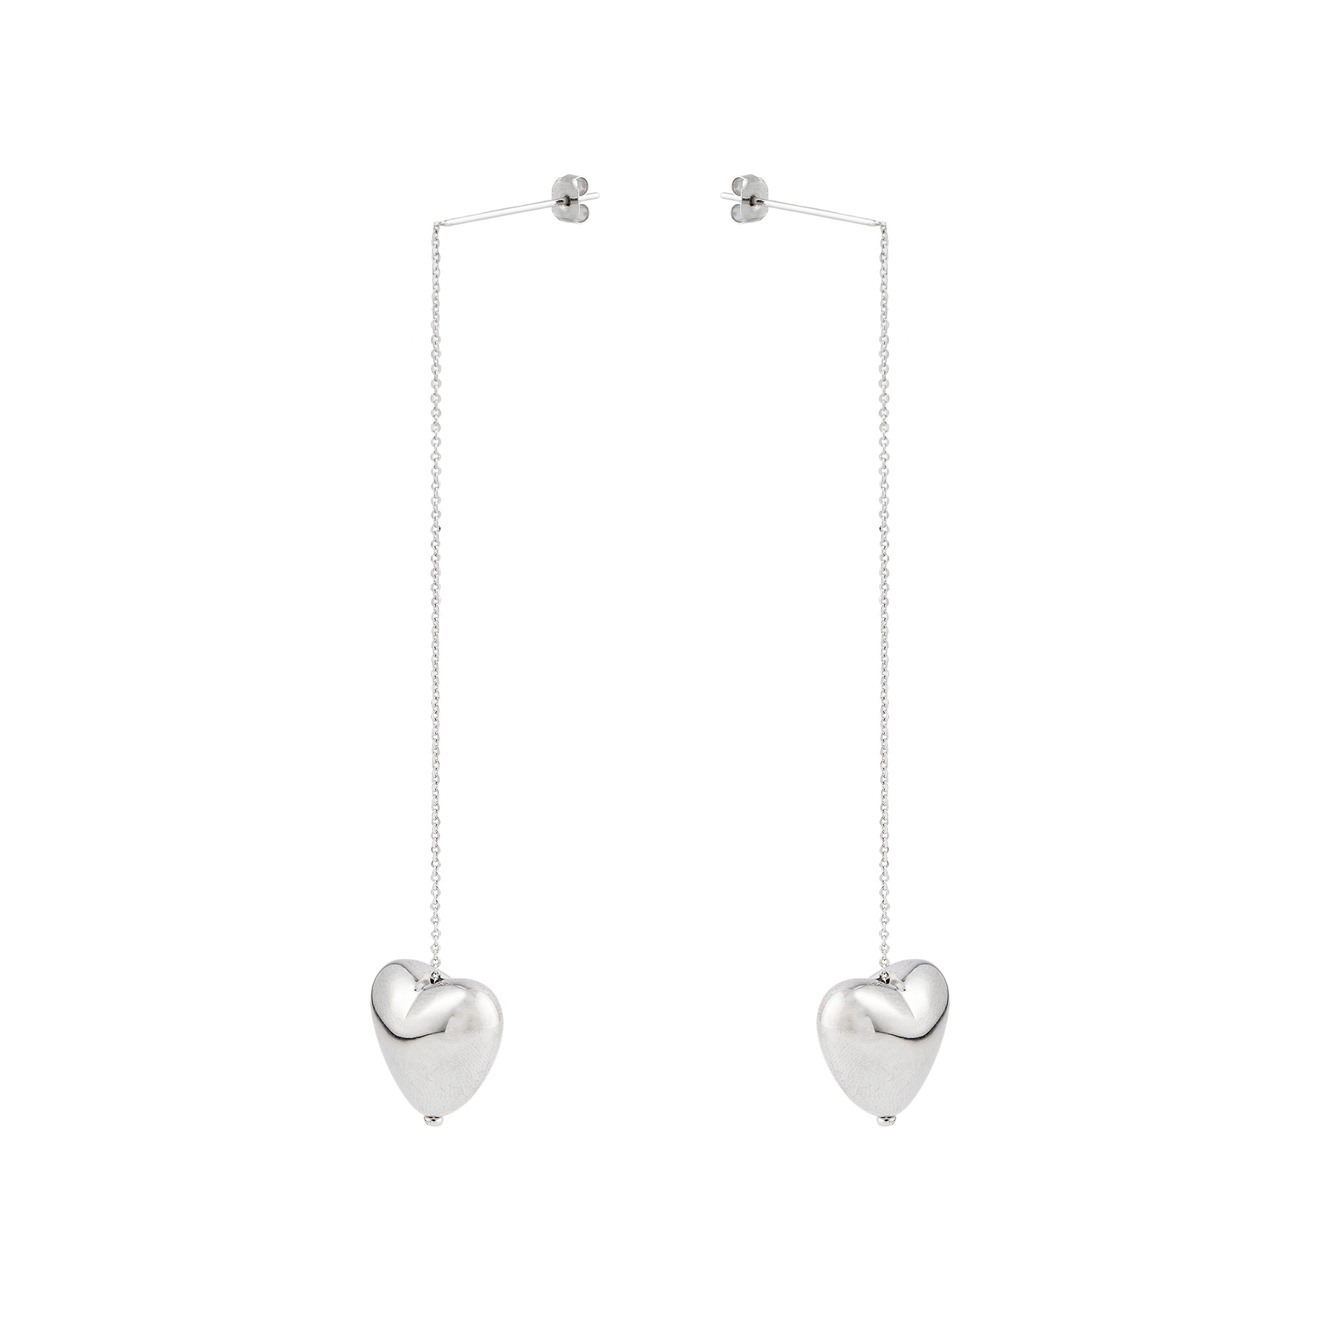 Aloud Серебристые длинные серьги протяжки с объемными сердцами aqua серебристые серьги с подвесками сердцами